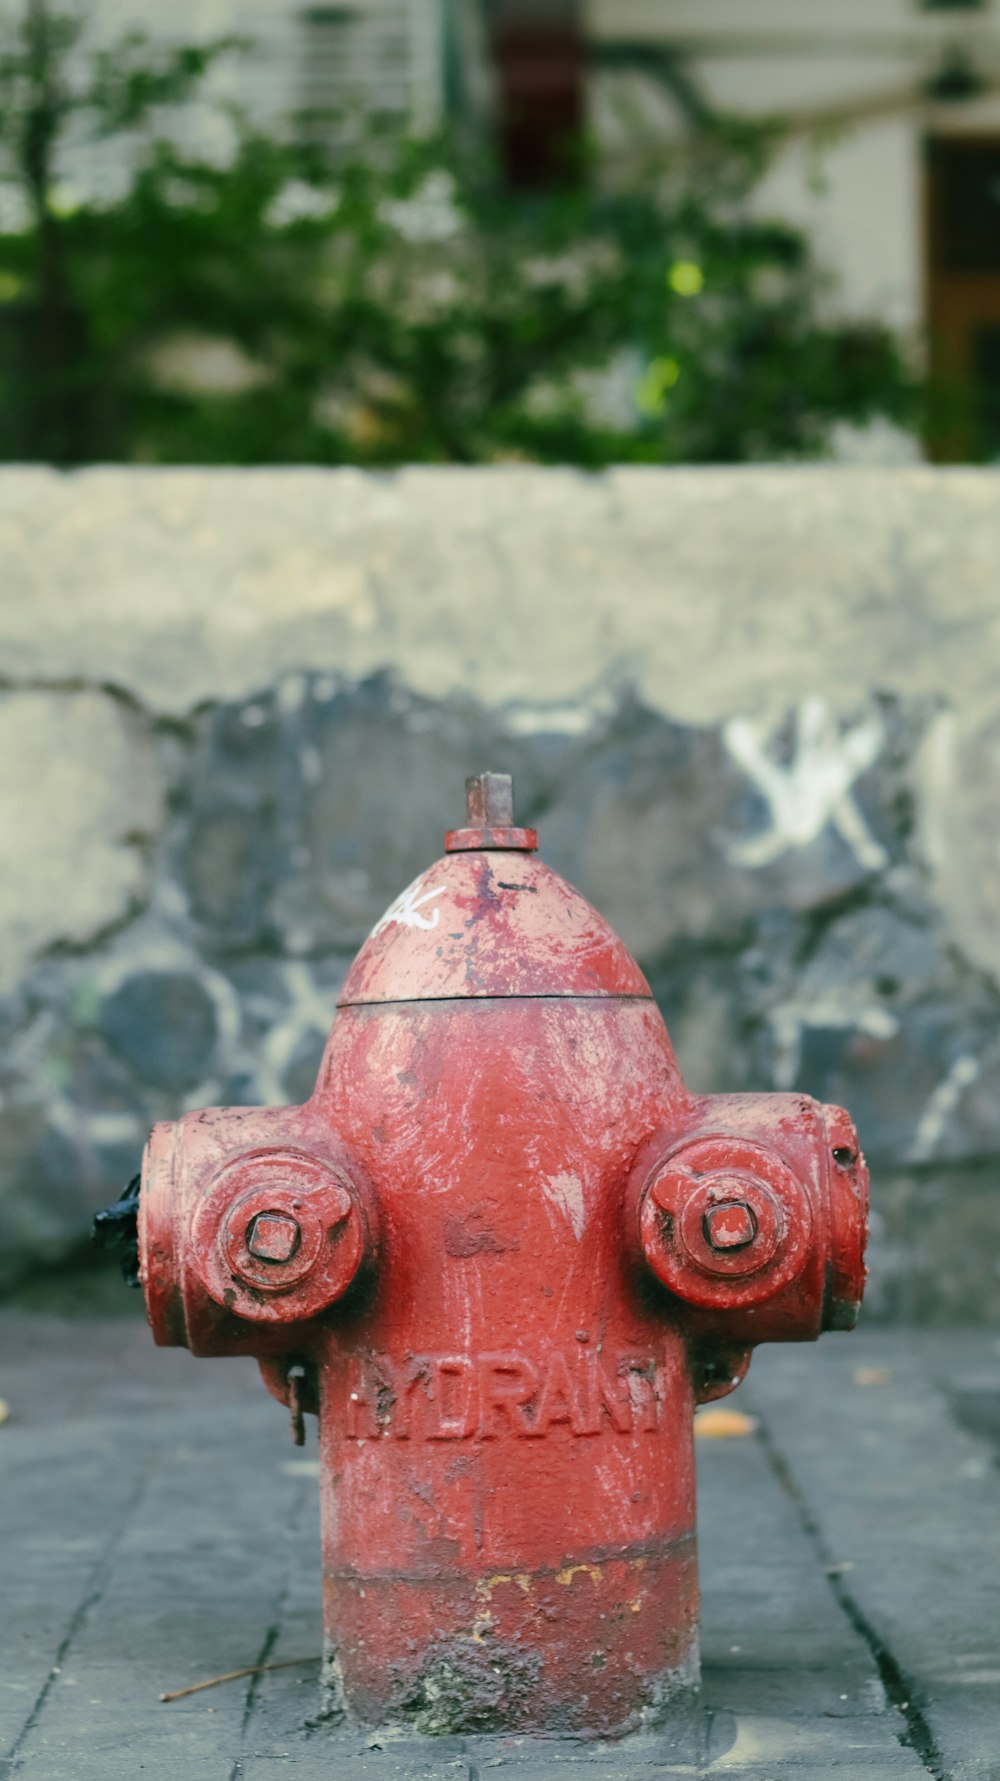 idrante antincendio rosso su muro di cemento grigio